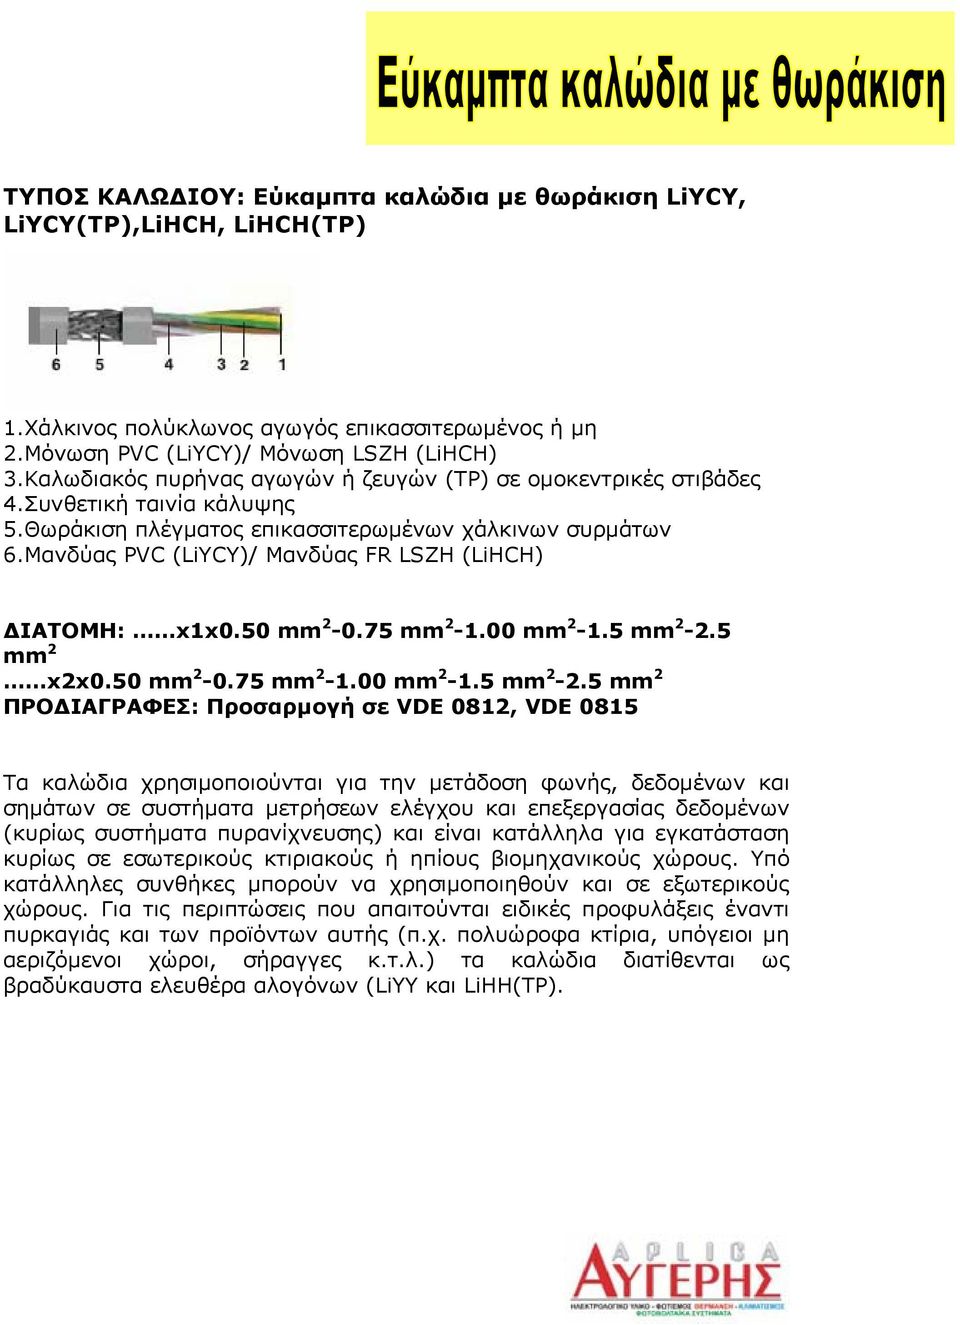 Μανδύας PVC (LiYCY)/ Μανδύας FR LSZH (LiHCH) ΔΙΑΤΟΜΗ: x1x0.50 mm 2-0.75 mm 2-1.00 mm 2-1.5 mm 2-2.